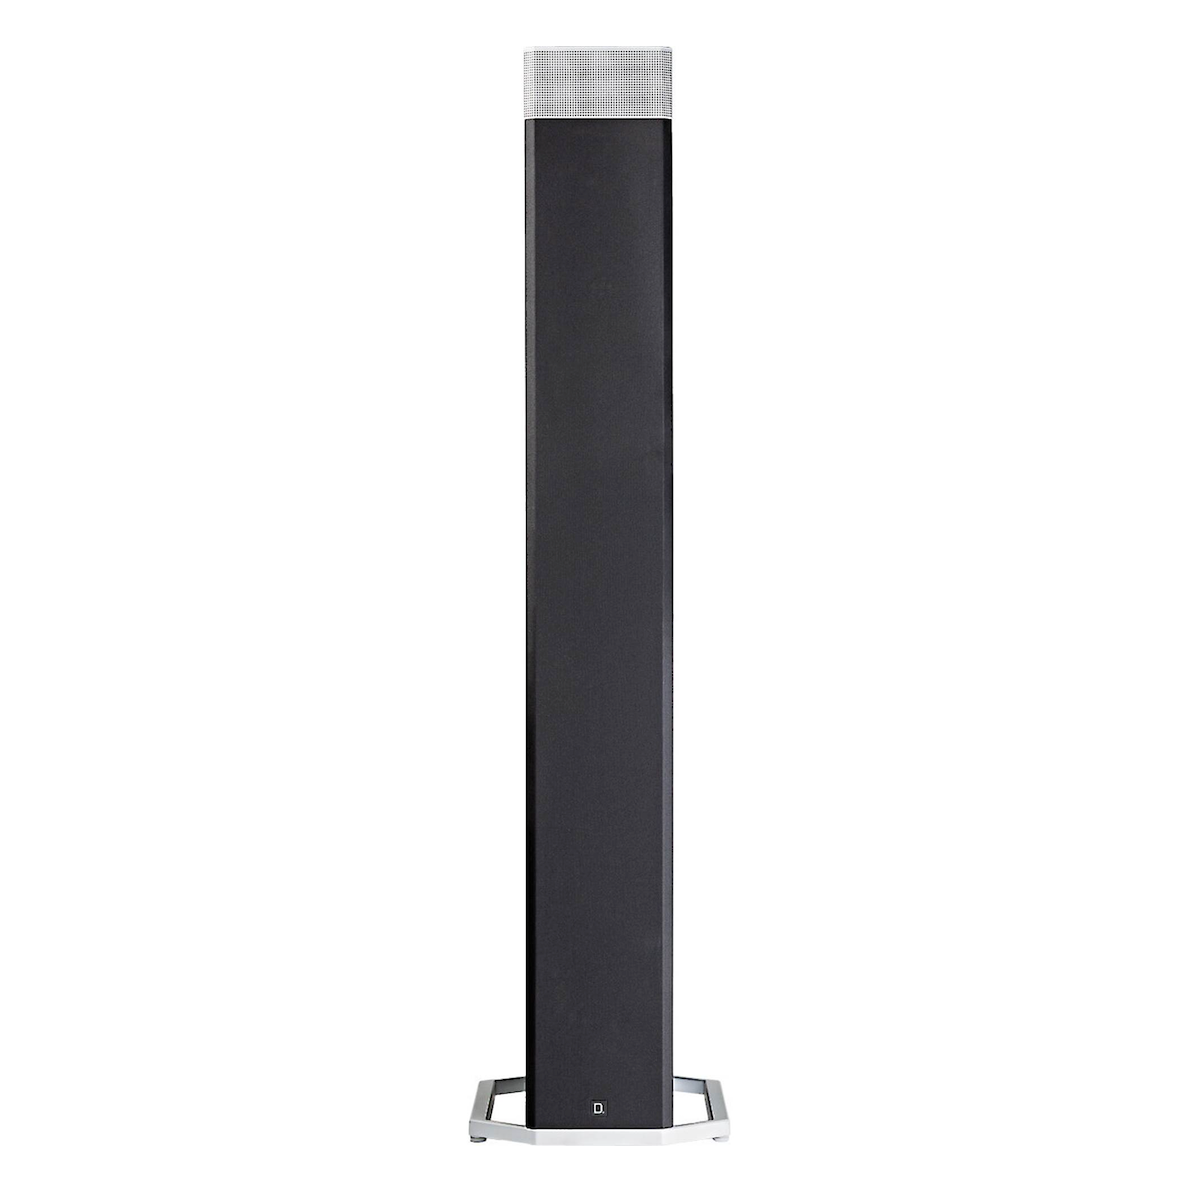 Definitive Technology BP9080x - Floor Standing Speaker (Pair) - AVStore